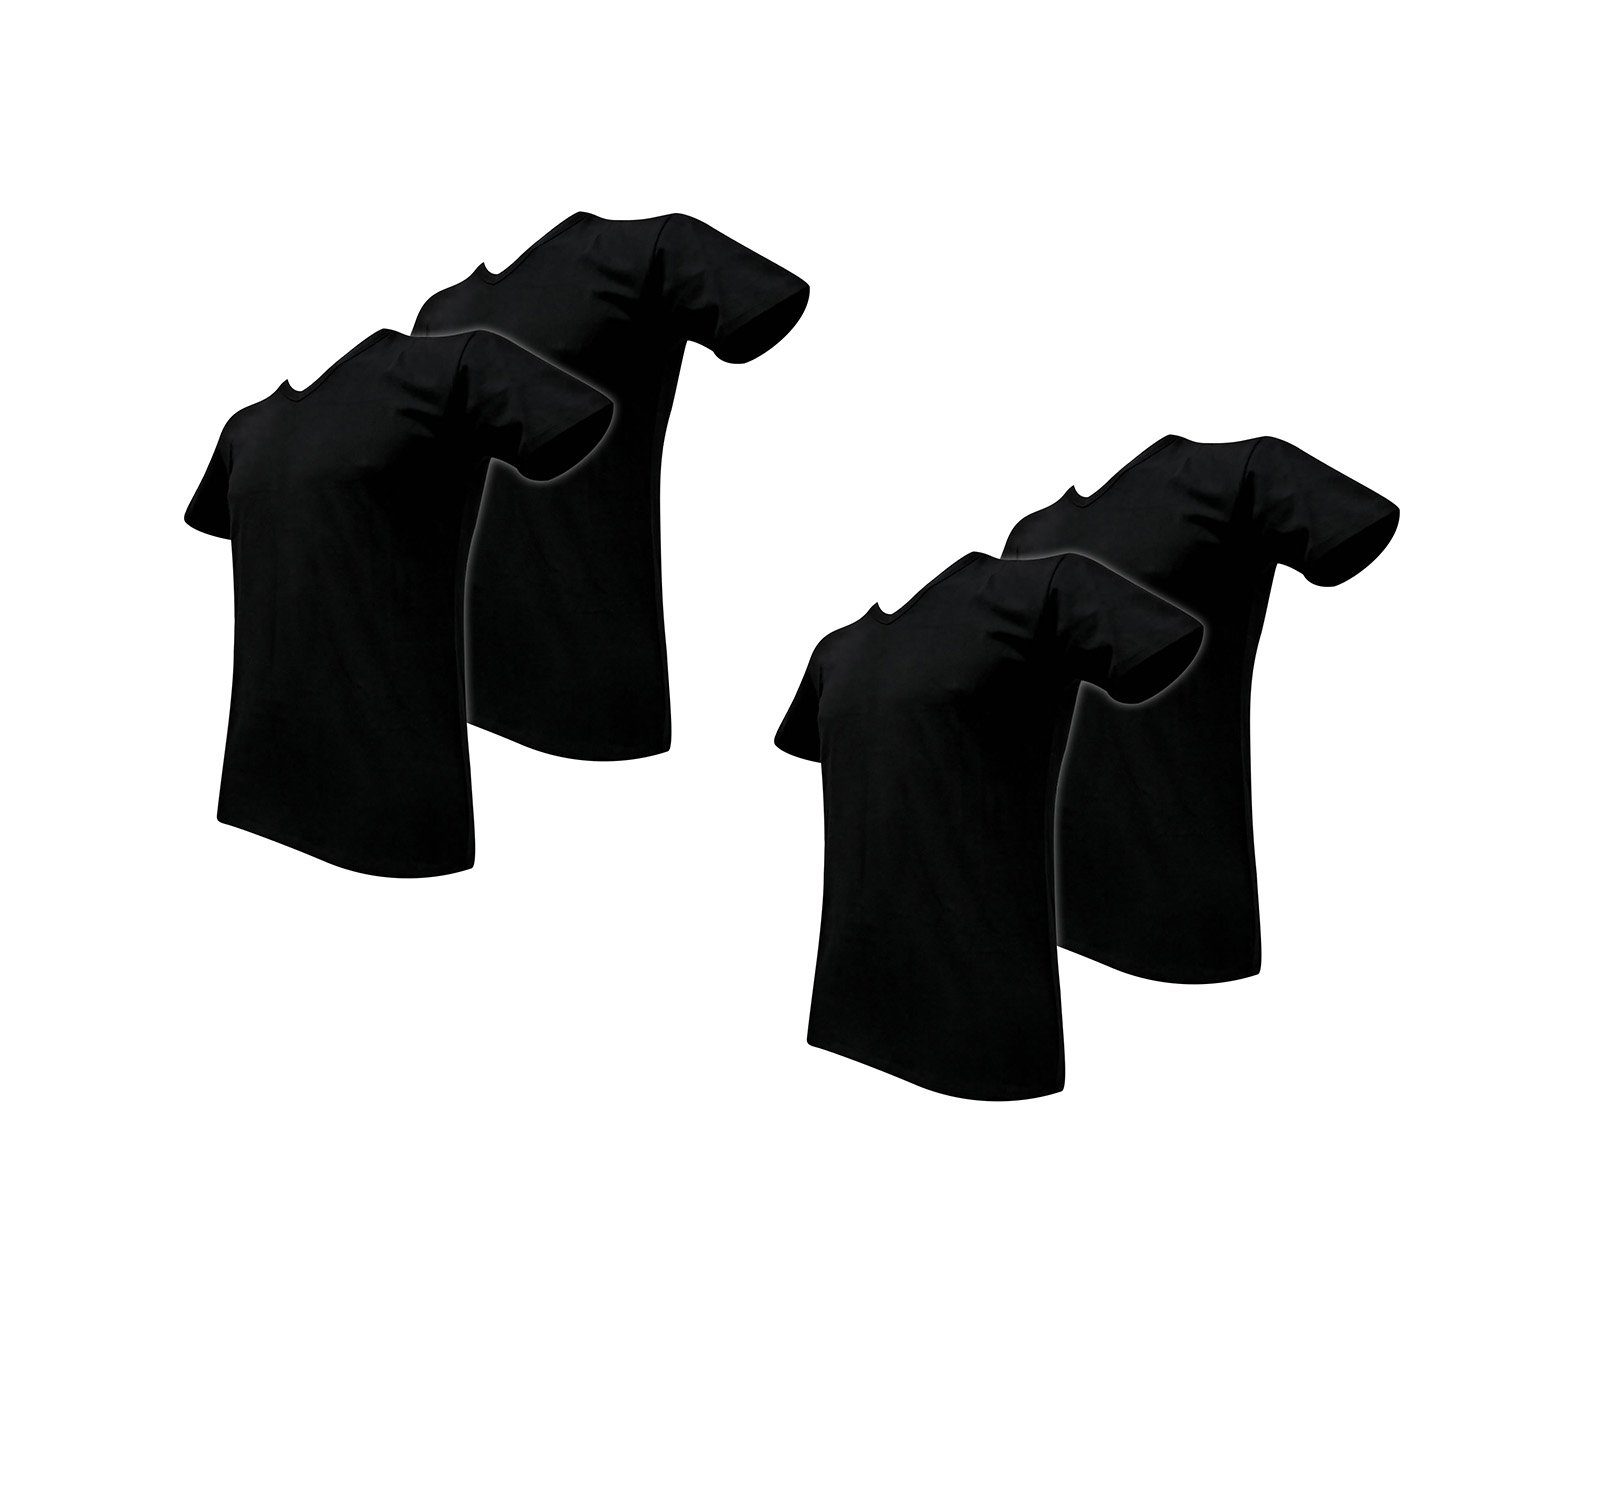 Sympatico T-Shirt V-NECK Herren Shirt Super Soft 4er Pack 4 Stück ein Preis (4-er Packung, Sparpack, 4er-Pack, 4 Stück ein Preis) schwarz | V-Shirts